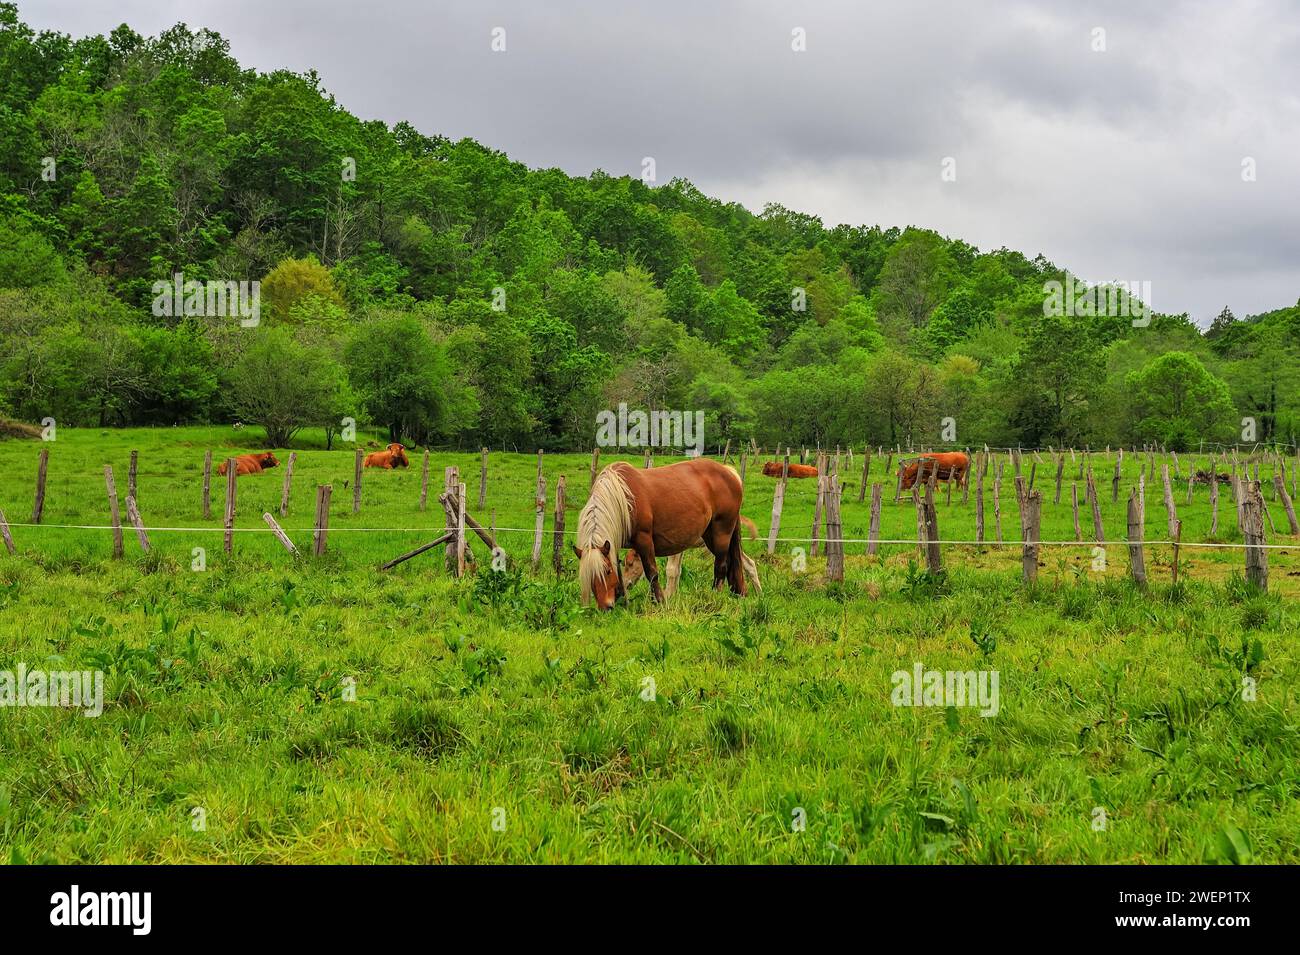 Une jument châtaignier avec une crinière blanche prend tendrement soin de son poulain dans un champ vert vibrant, avec d'autres chevaux paissant à proximité. Banque D'Images